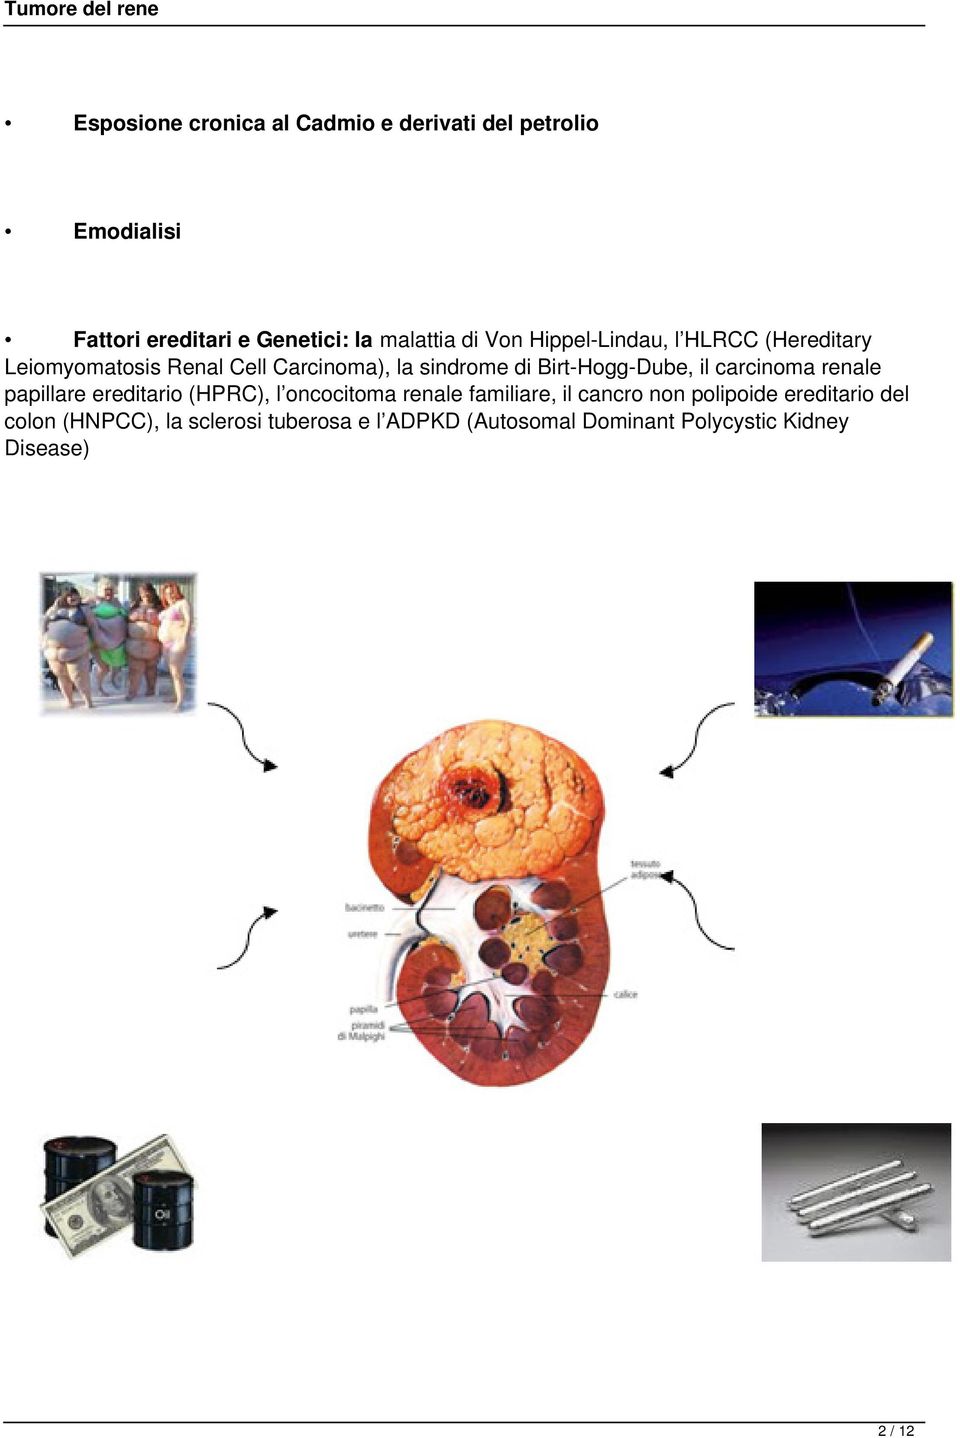 il carcinoma renale papillare ereditario (HPRC), l oncocitoma renale familiare, il cancro non polipoide